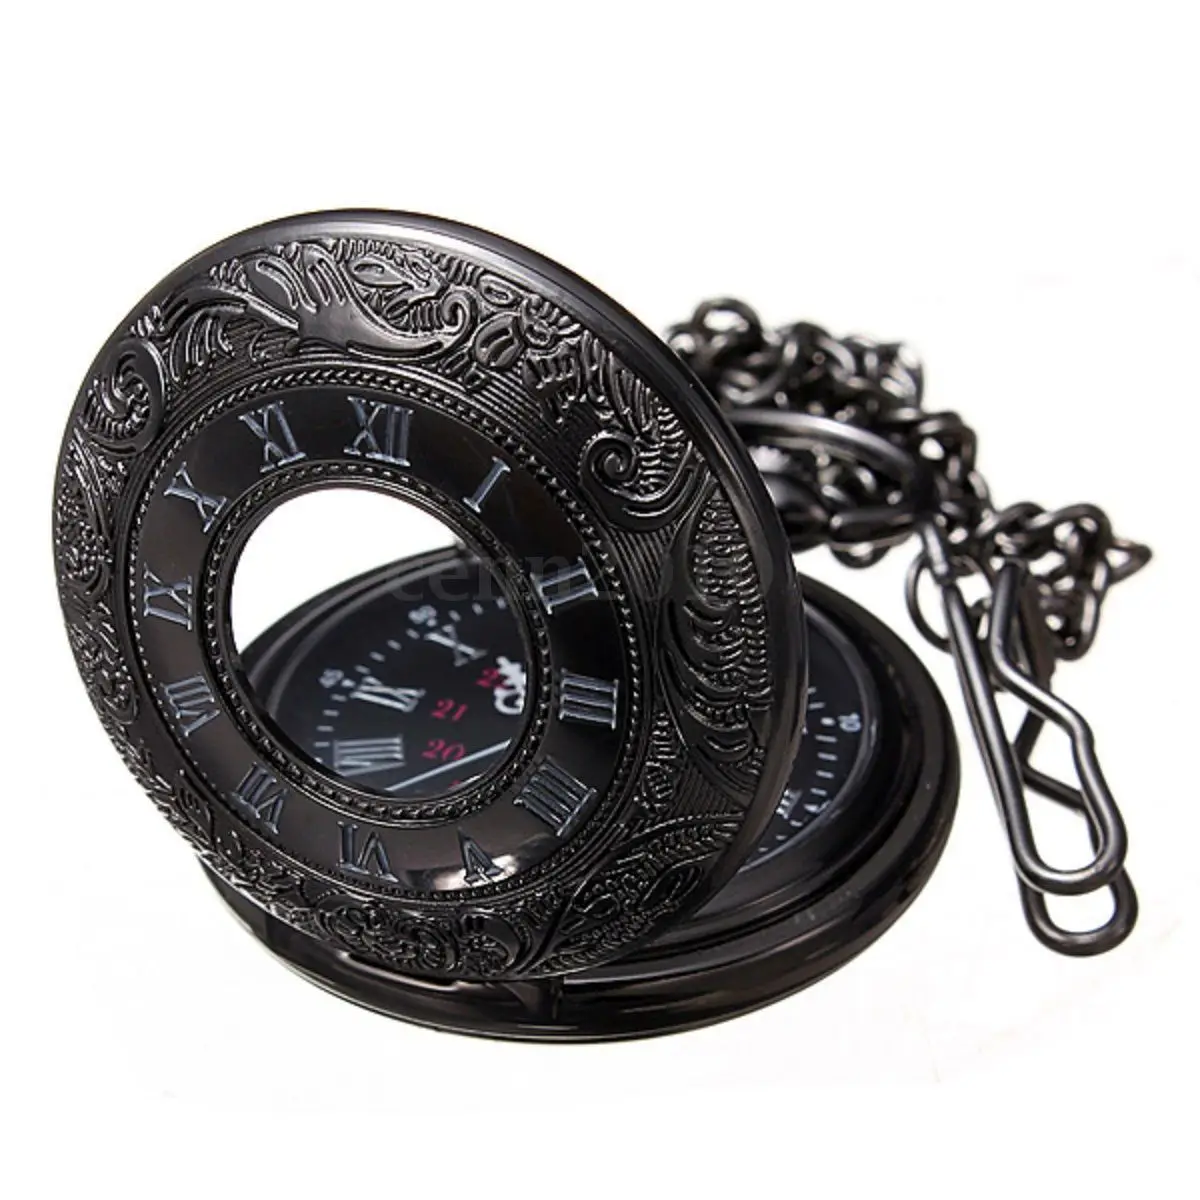 YCYS-винтажное стимпанк черное римское ожерелье с цифрами кварцевые карманные часы подарок